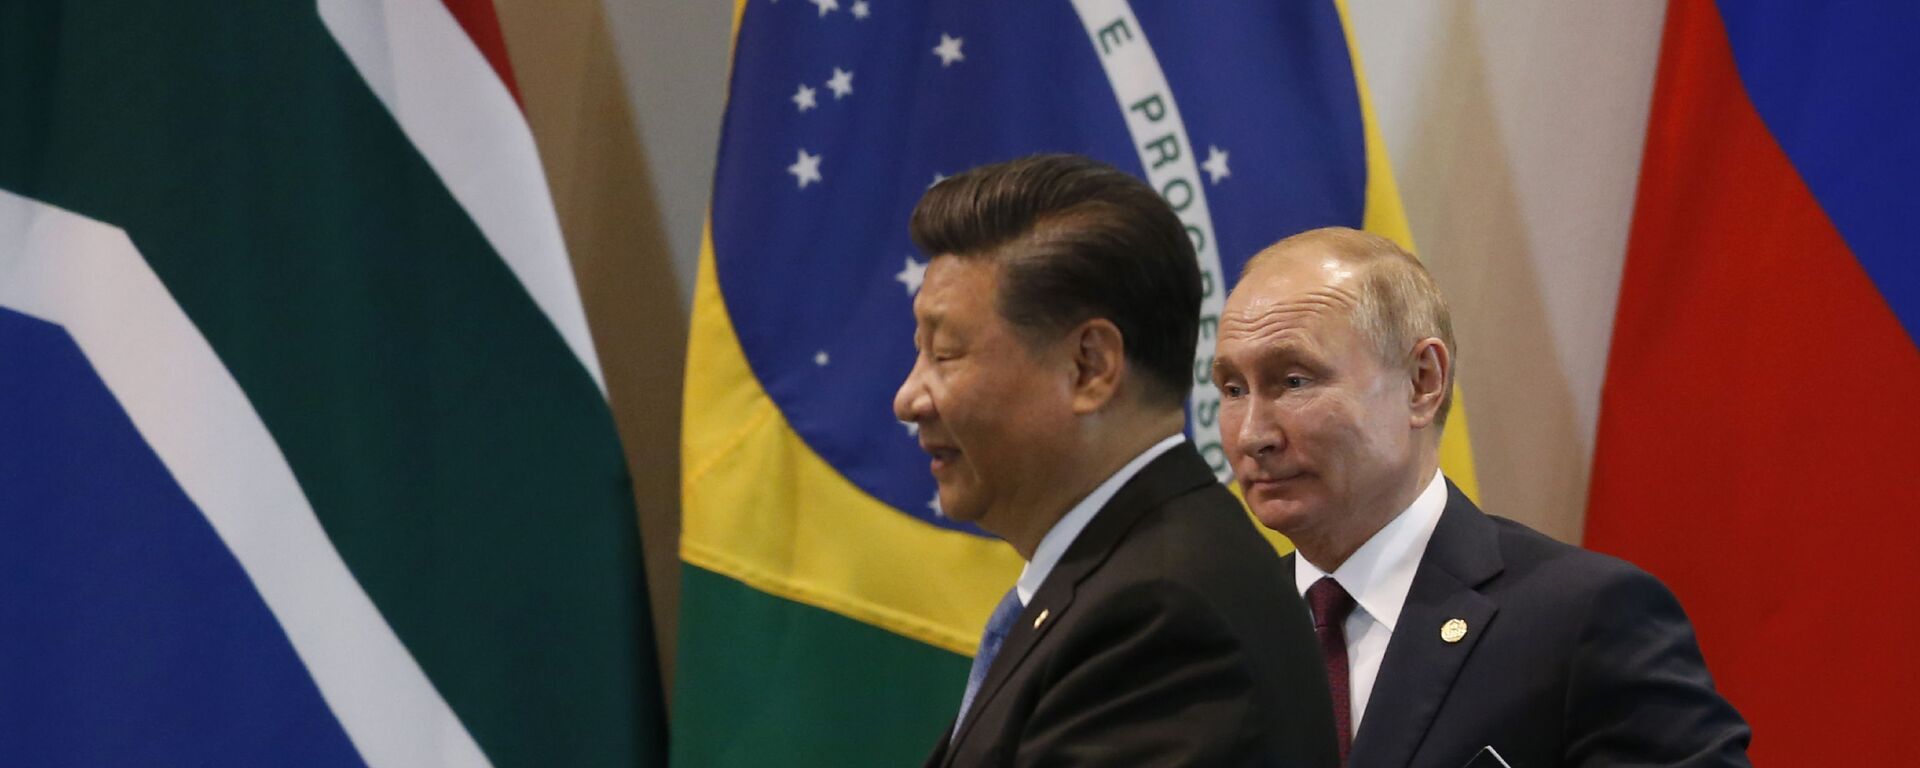 Presidentes da China, Xi Jinping (à esquerda), e da Rússia, Vladimir Putin, durante encontro do BRICS no Itamaraty. Brasília, Brasil, 14 de novembro de 2019 (foto de arquivo) - Sputnik Brasil, 1920, 26.12.2022